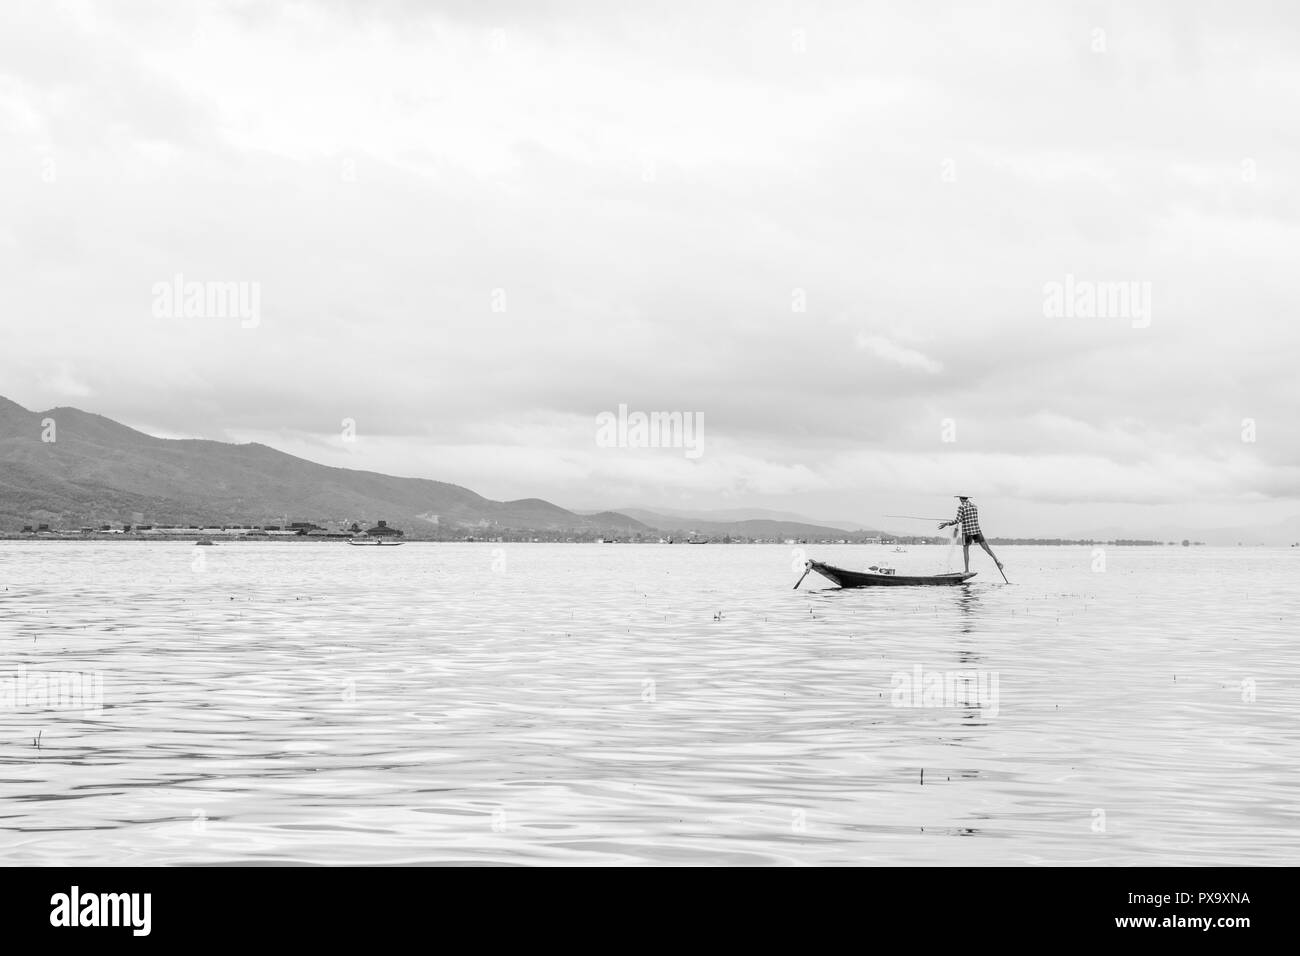 Reisen lokale junge burmesen männliche Fischer tragen geprüft, t-shirt, mit Stick und net zu fischen, Balancieren auf einem Fuß auf dem Boot, Inle Lake Myanmar, Birma Stockfoto